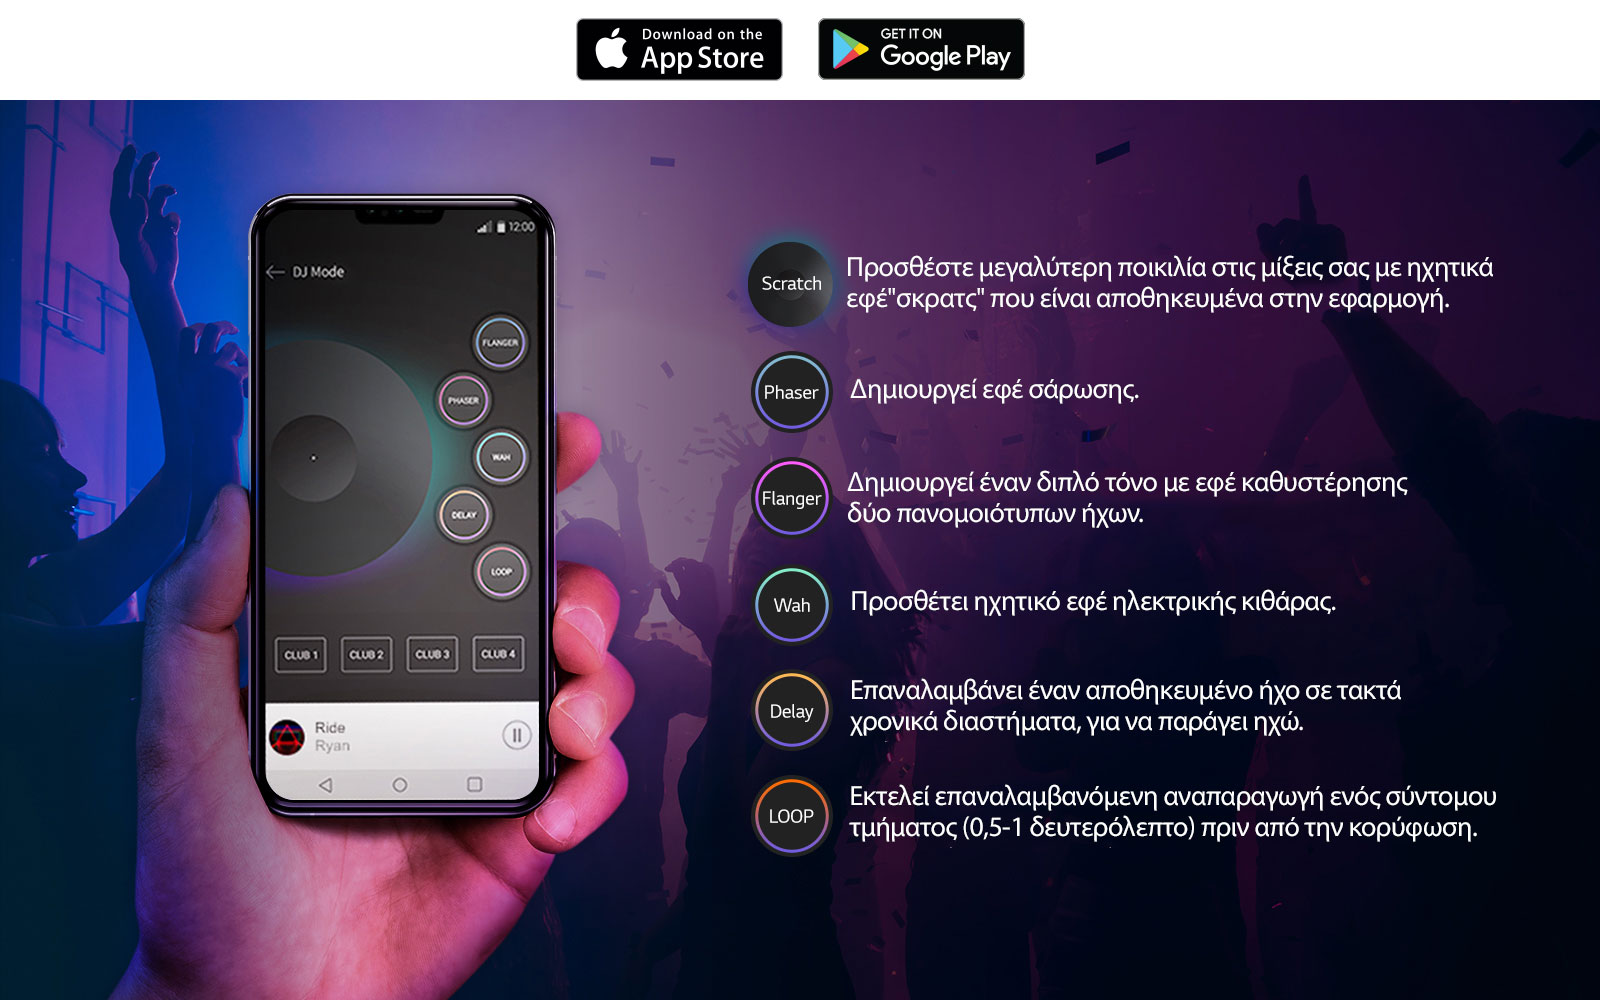 Εικόνα ενός χεριού που κρατά ένα τηλέφωνο με την εφαρμογή DJ στην οθόνη και τη λίστα λειτουργιών δίπλα, υποδεικνύοντας την έκφραση του ήχου που παράγει το προϊόν σαν να προερχόταν από DJ μέσω της εφαρμογής XBOOM.